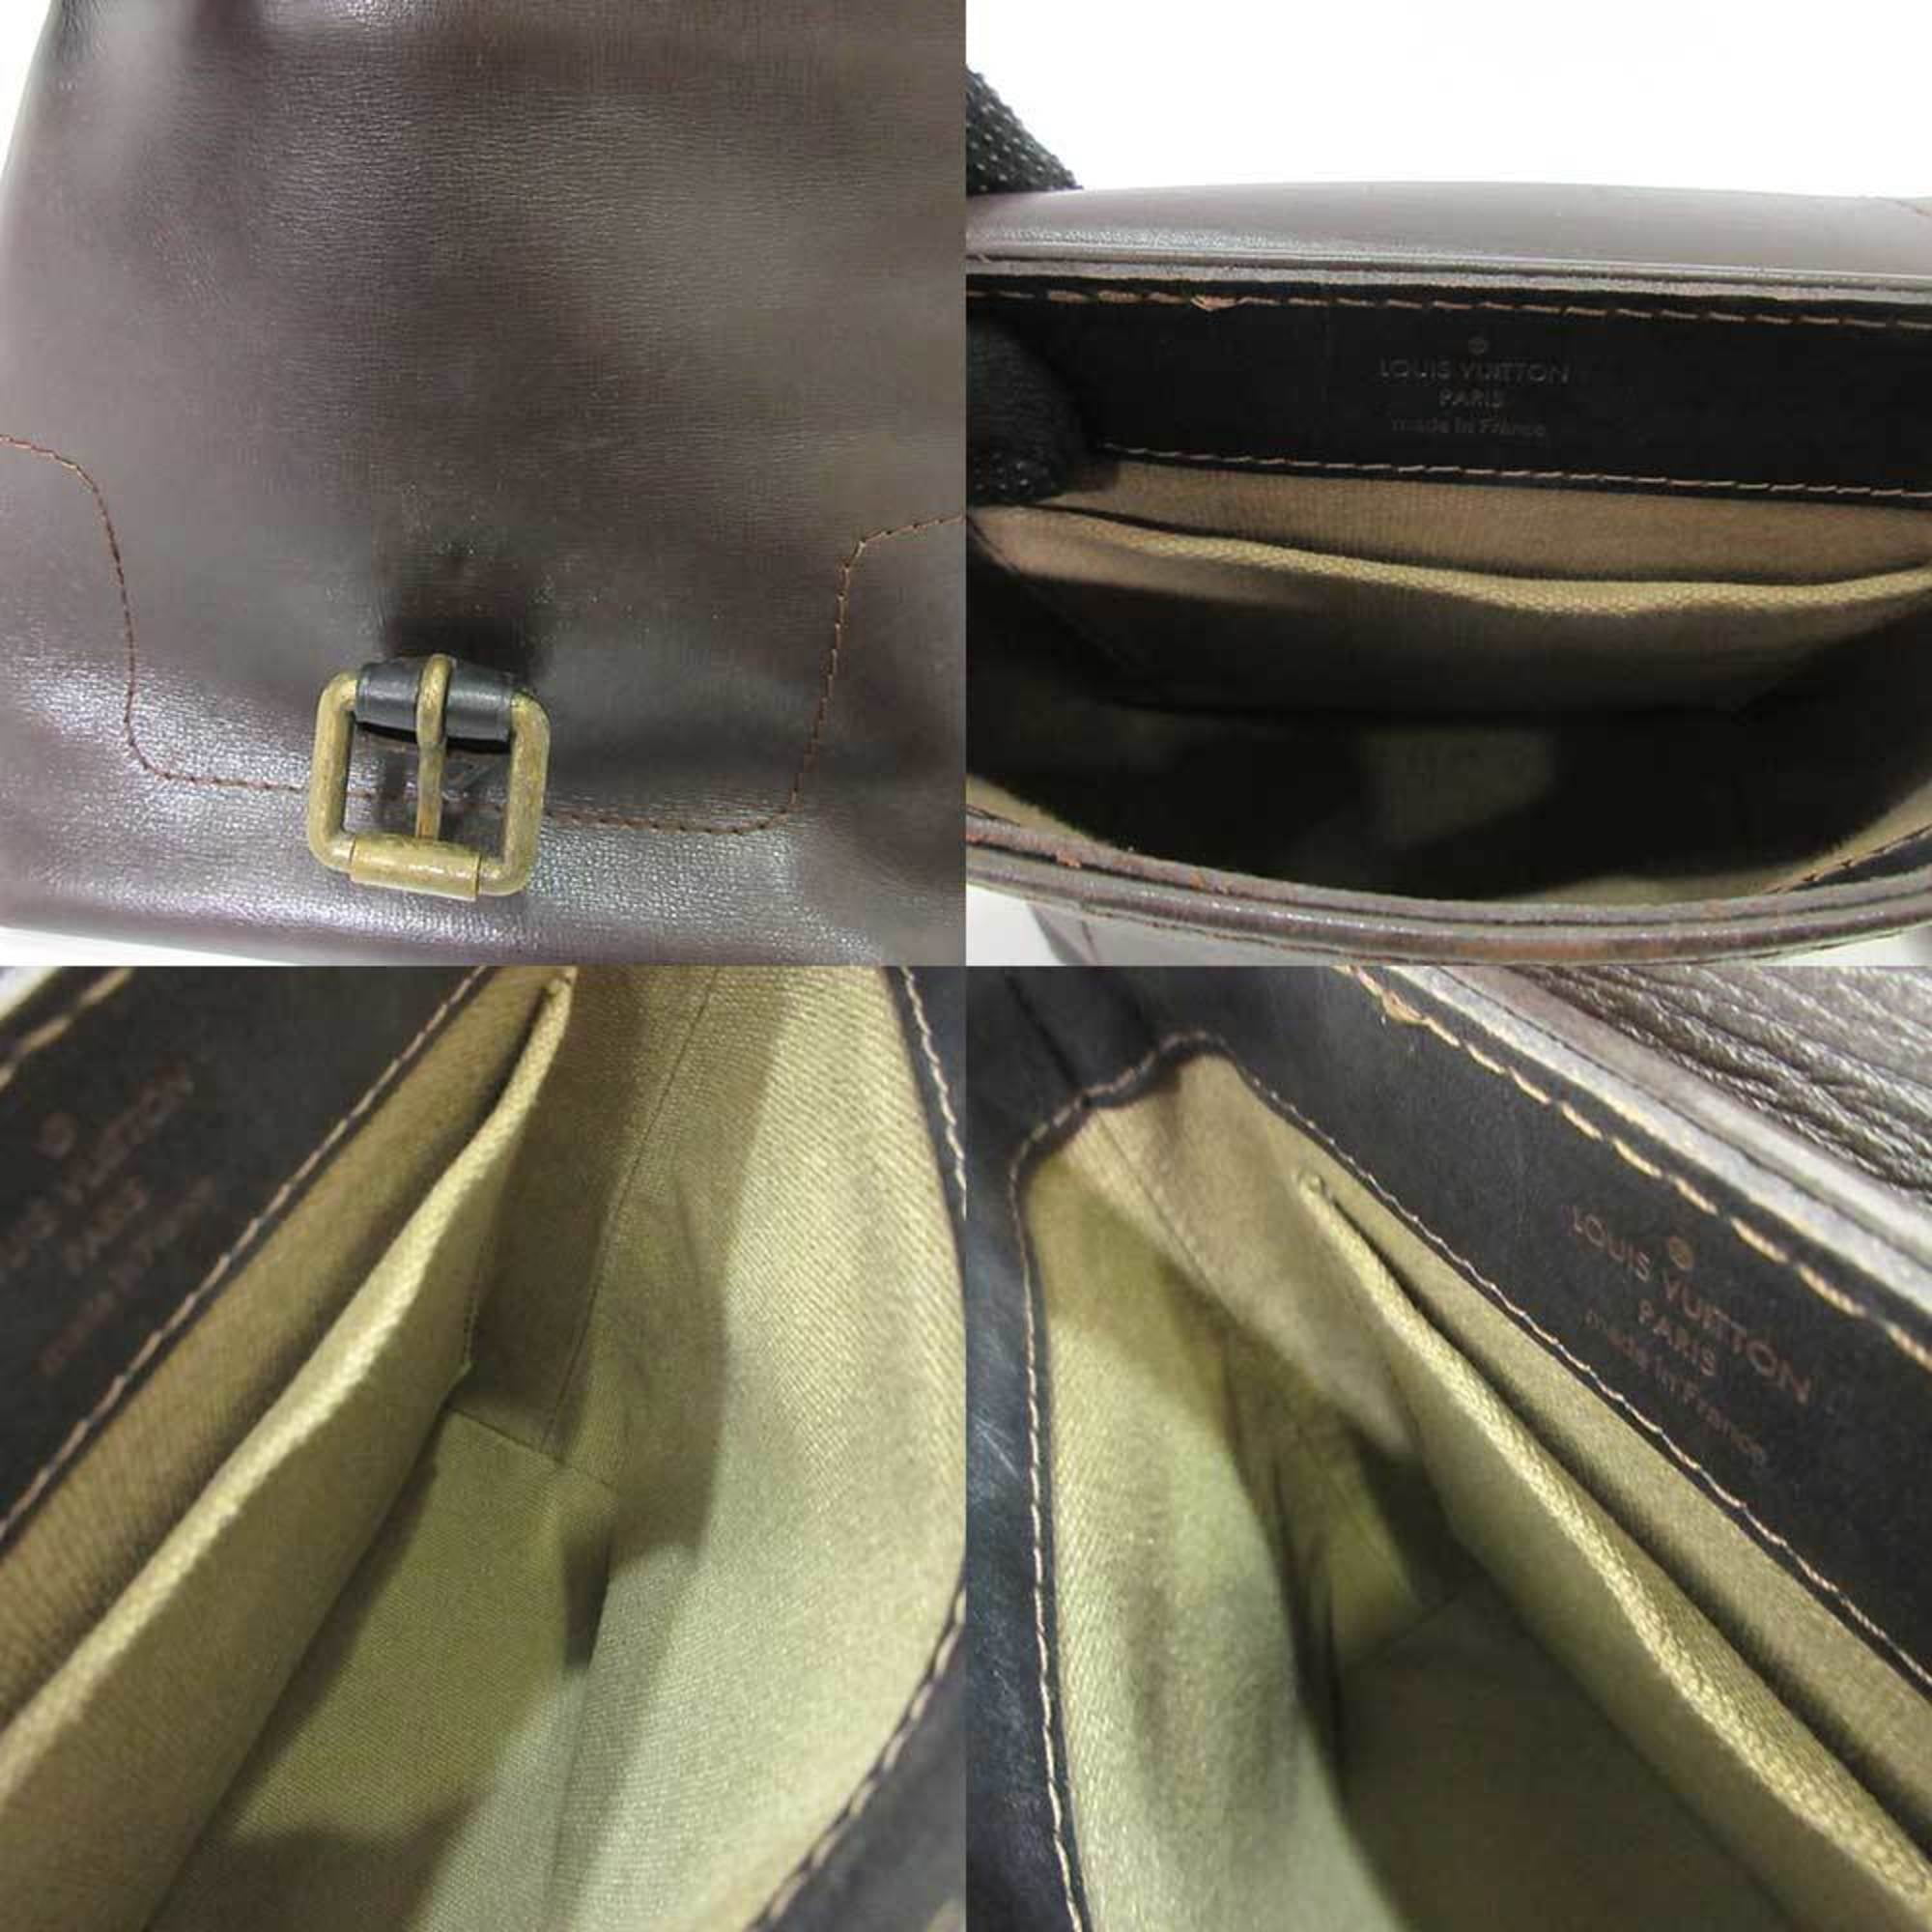 Louis Vuitton Utah Sacpla Shoulder Bag M92073 Cafe Brown Leather Men's  LOUIS VUITTON